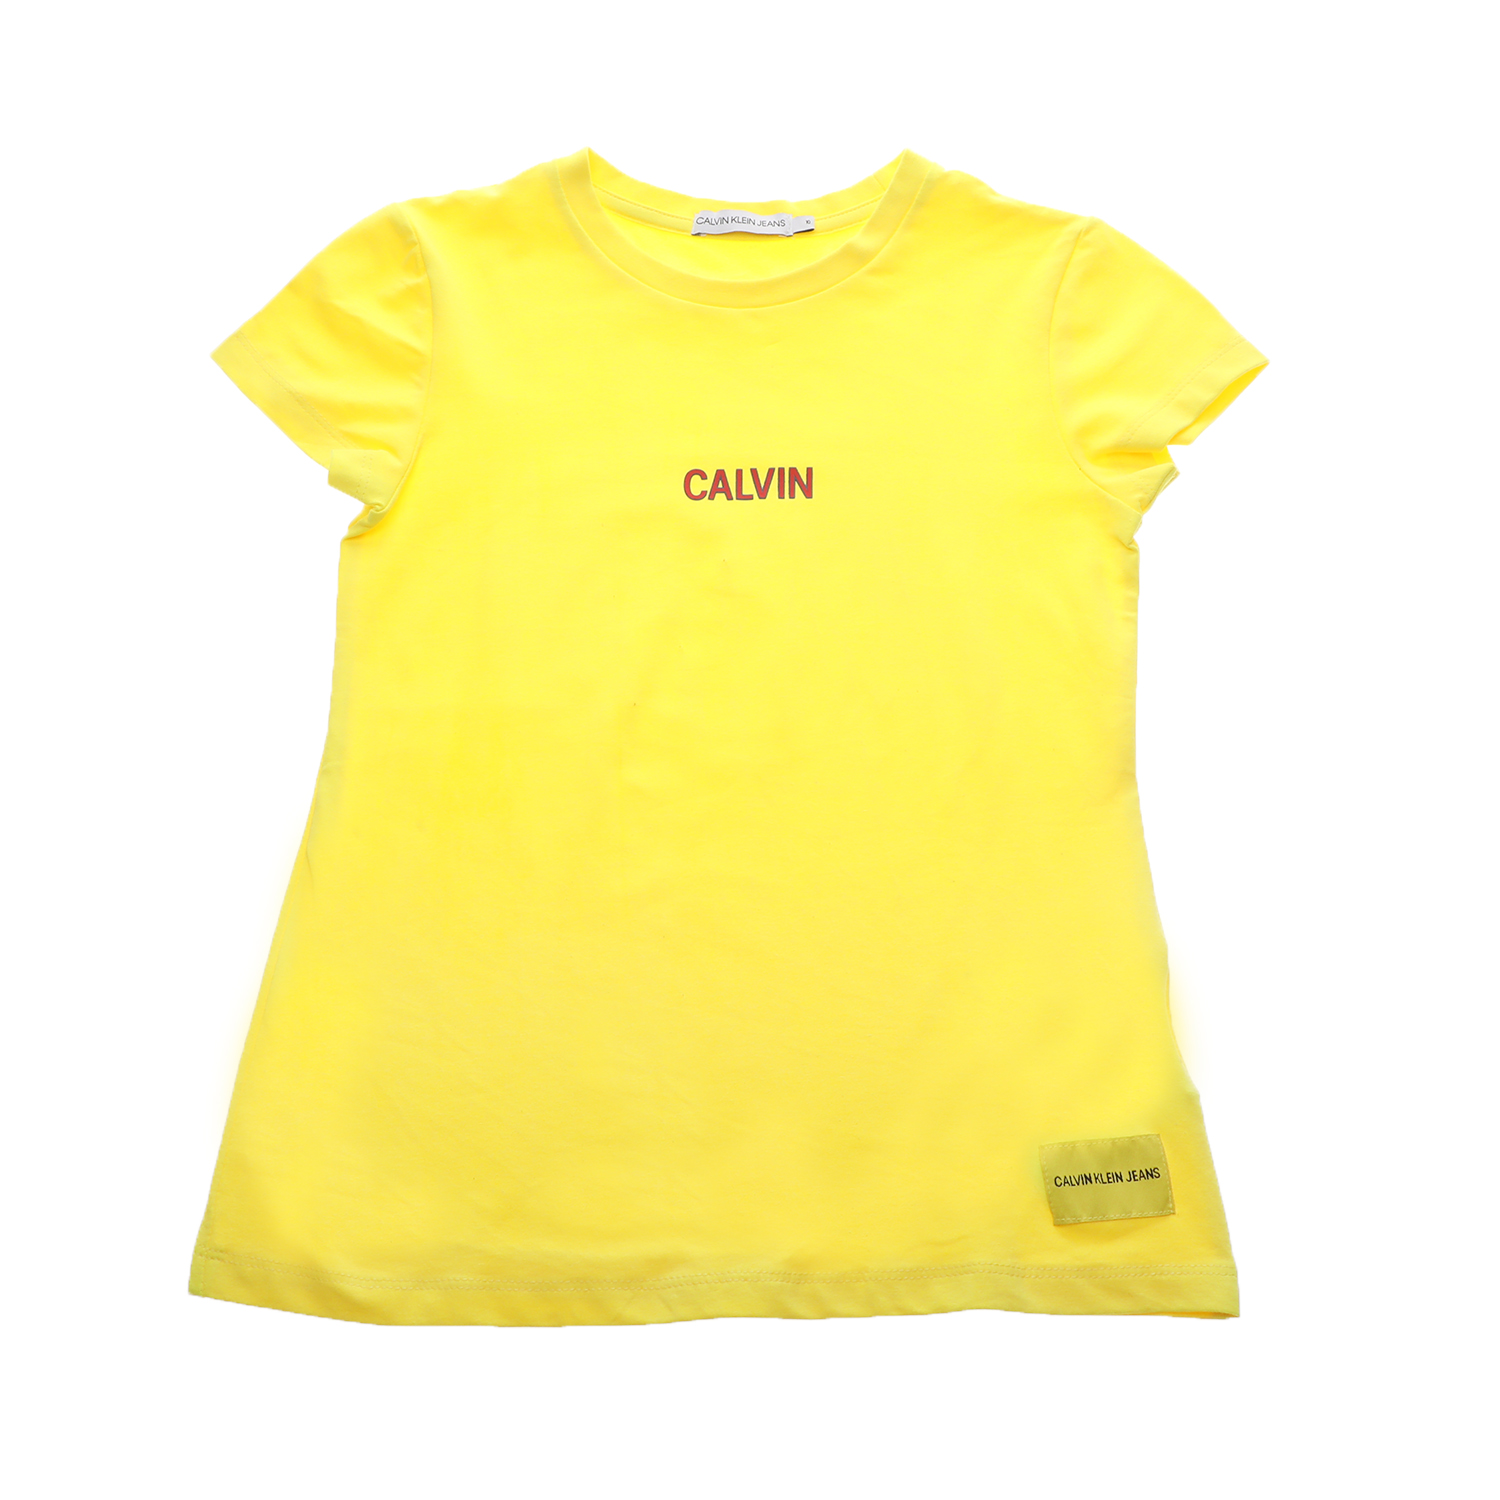 Παιδικά/Girls/Ρούχα/Μπλούζες Κοντομάνικες-Αμάνικες CALVIN KLEIN JEANS KIDS - Παιδικό t-shirt CALVIN KLEIN JEANS KIDS κίτρινο